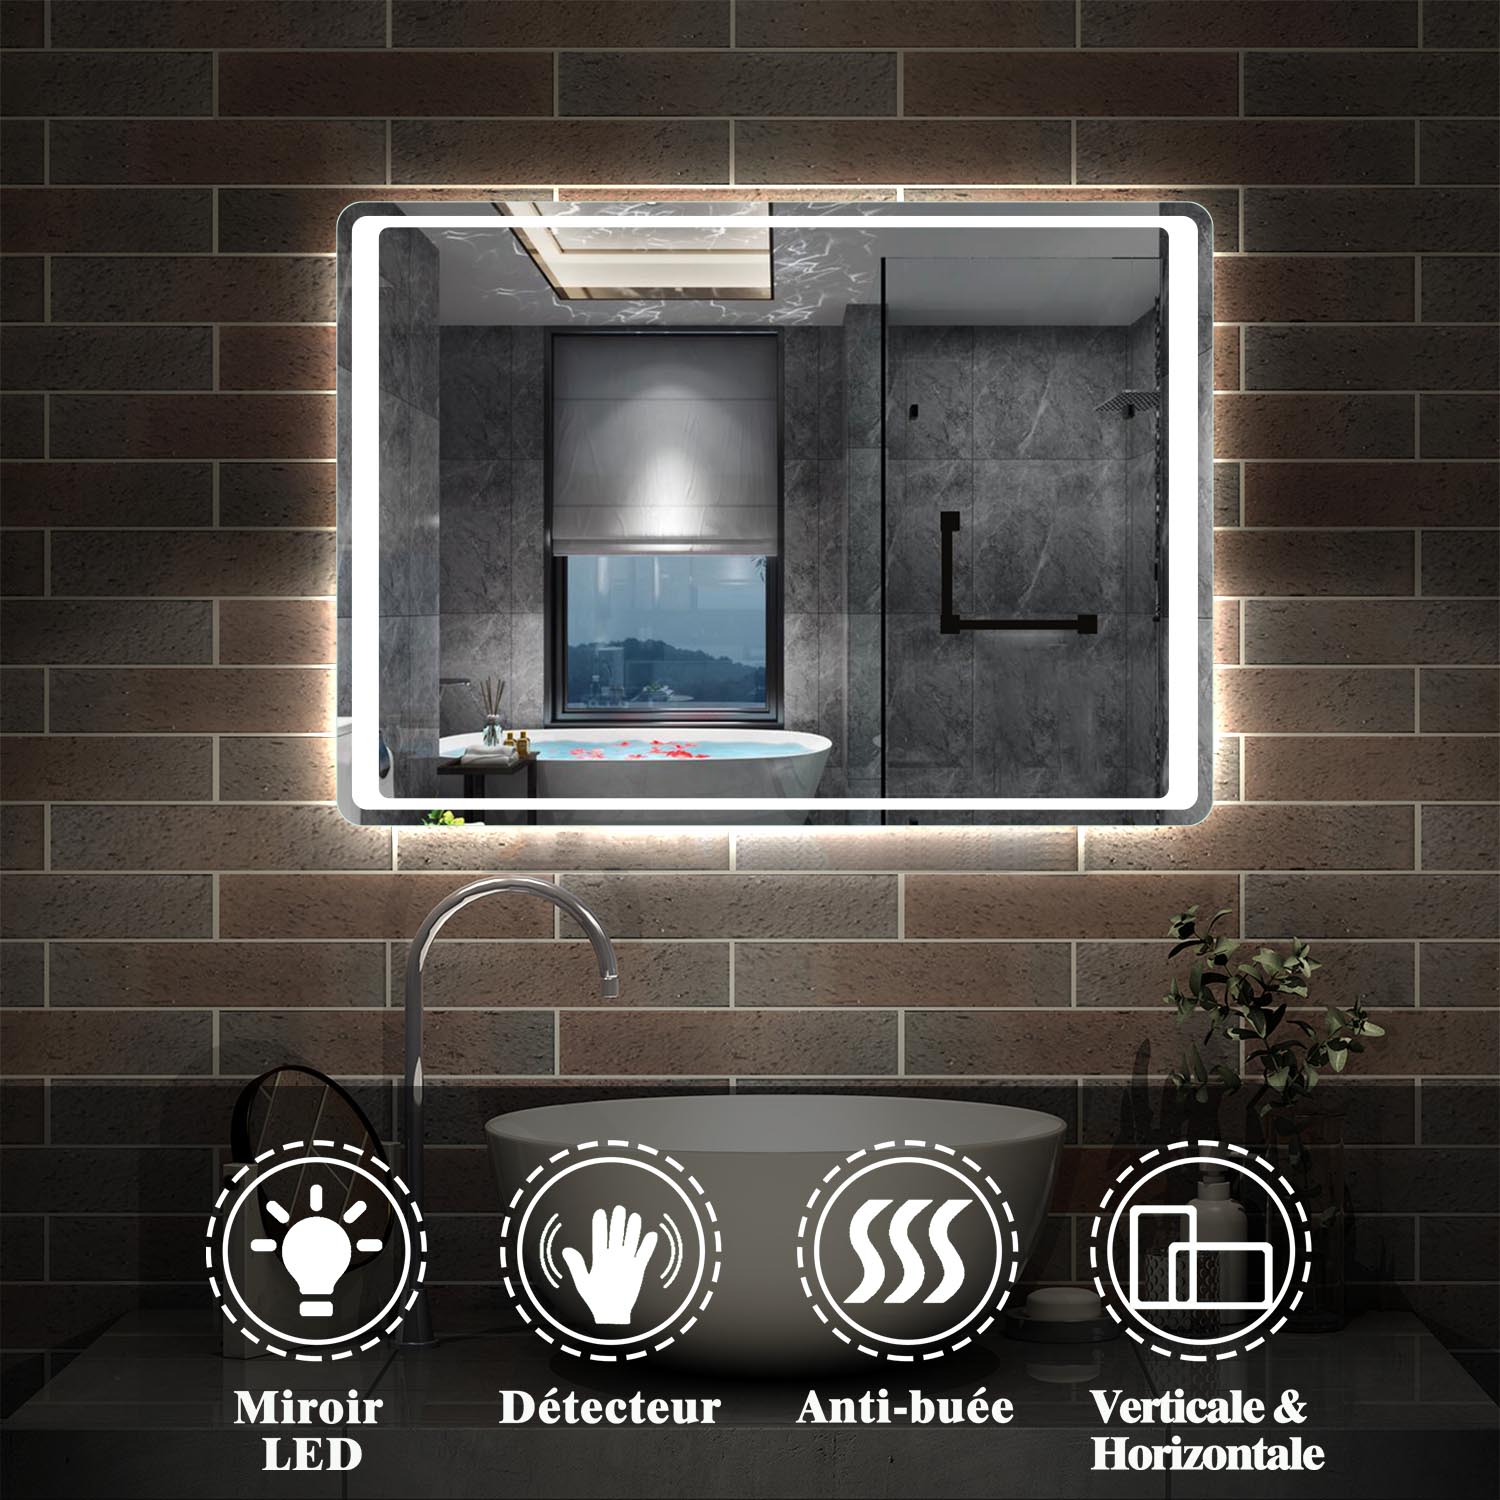 Miroir pour salle de bain, illumination LED, éclairage intégré, avec fonction anti-buée/interrupteur infrarouge 80cm 90cm 100cm -Livraison gratuite